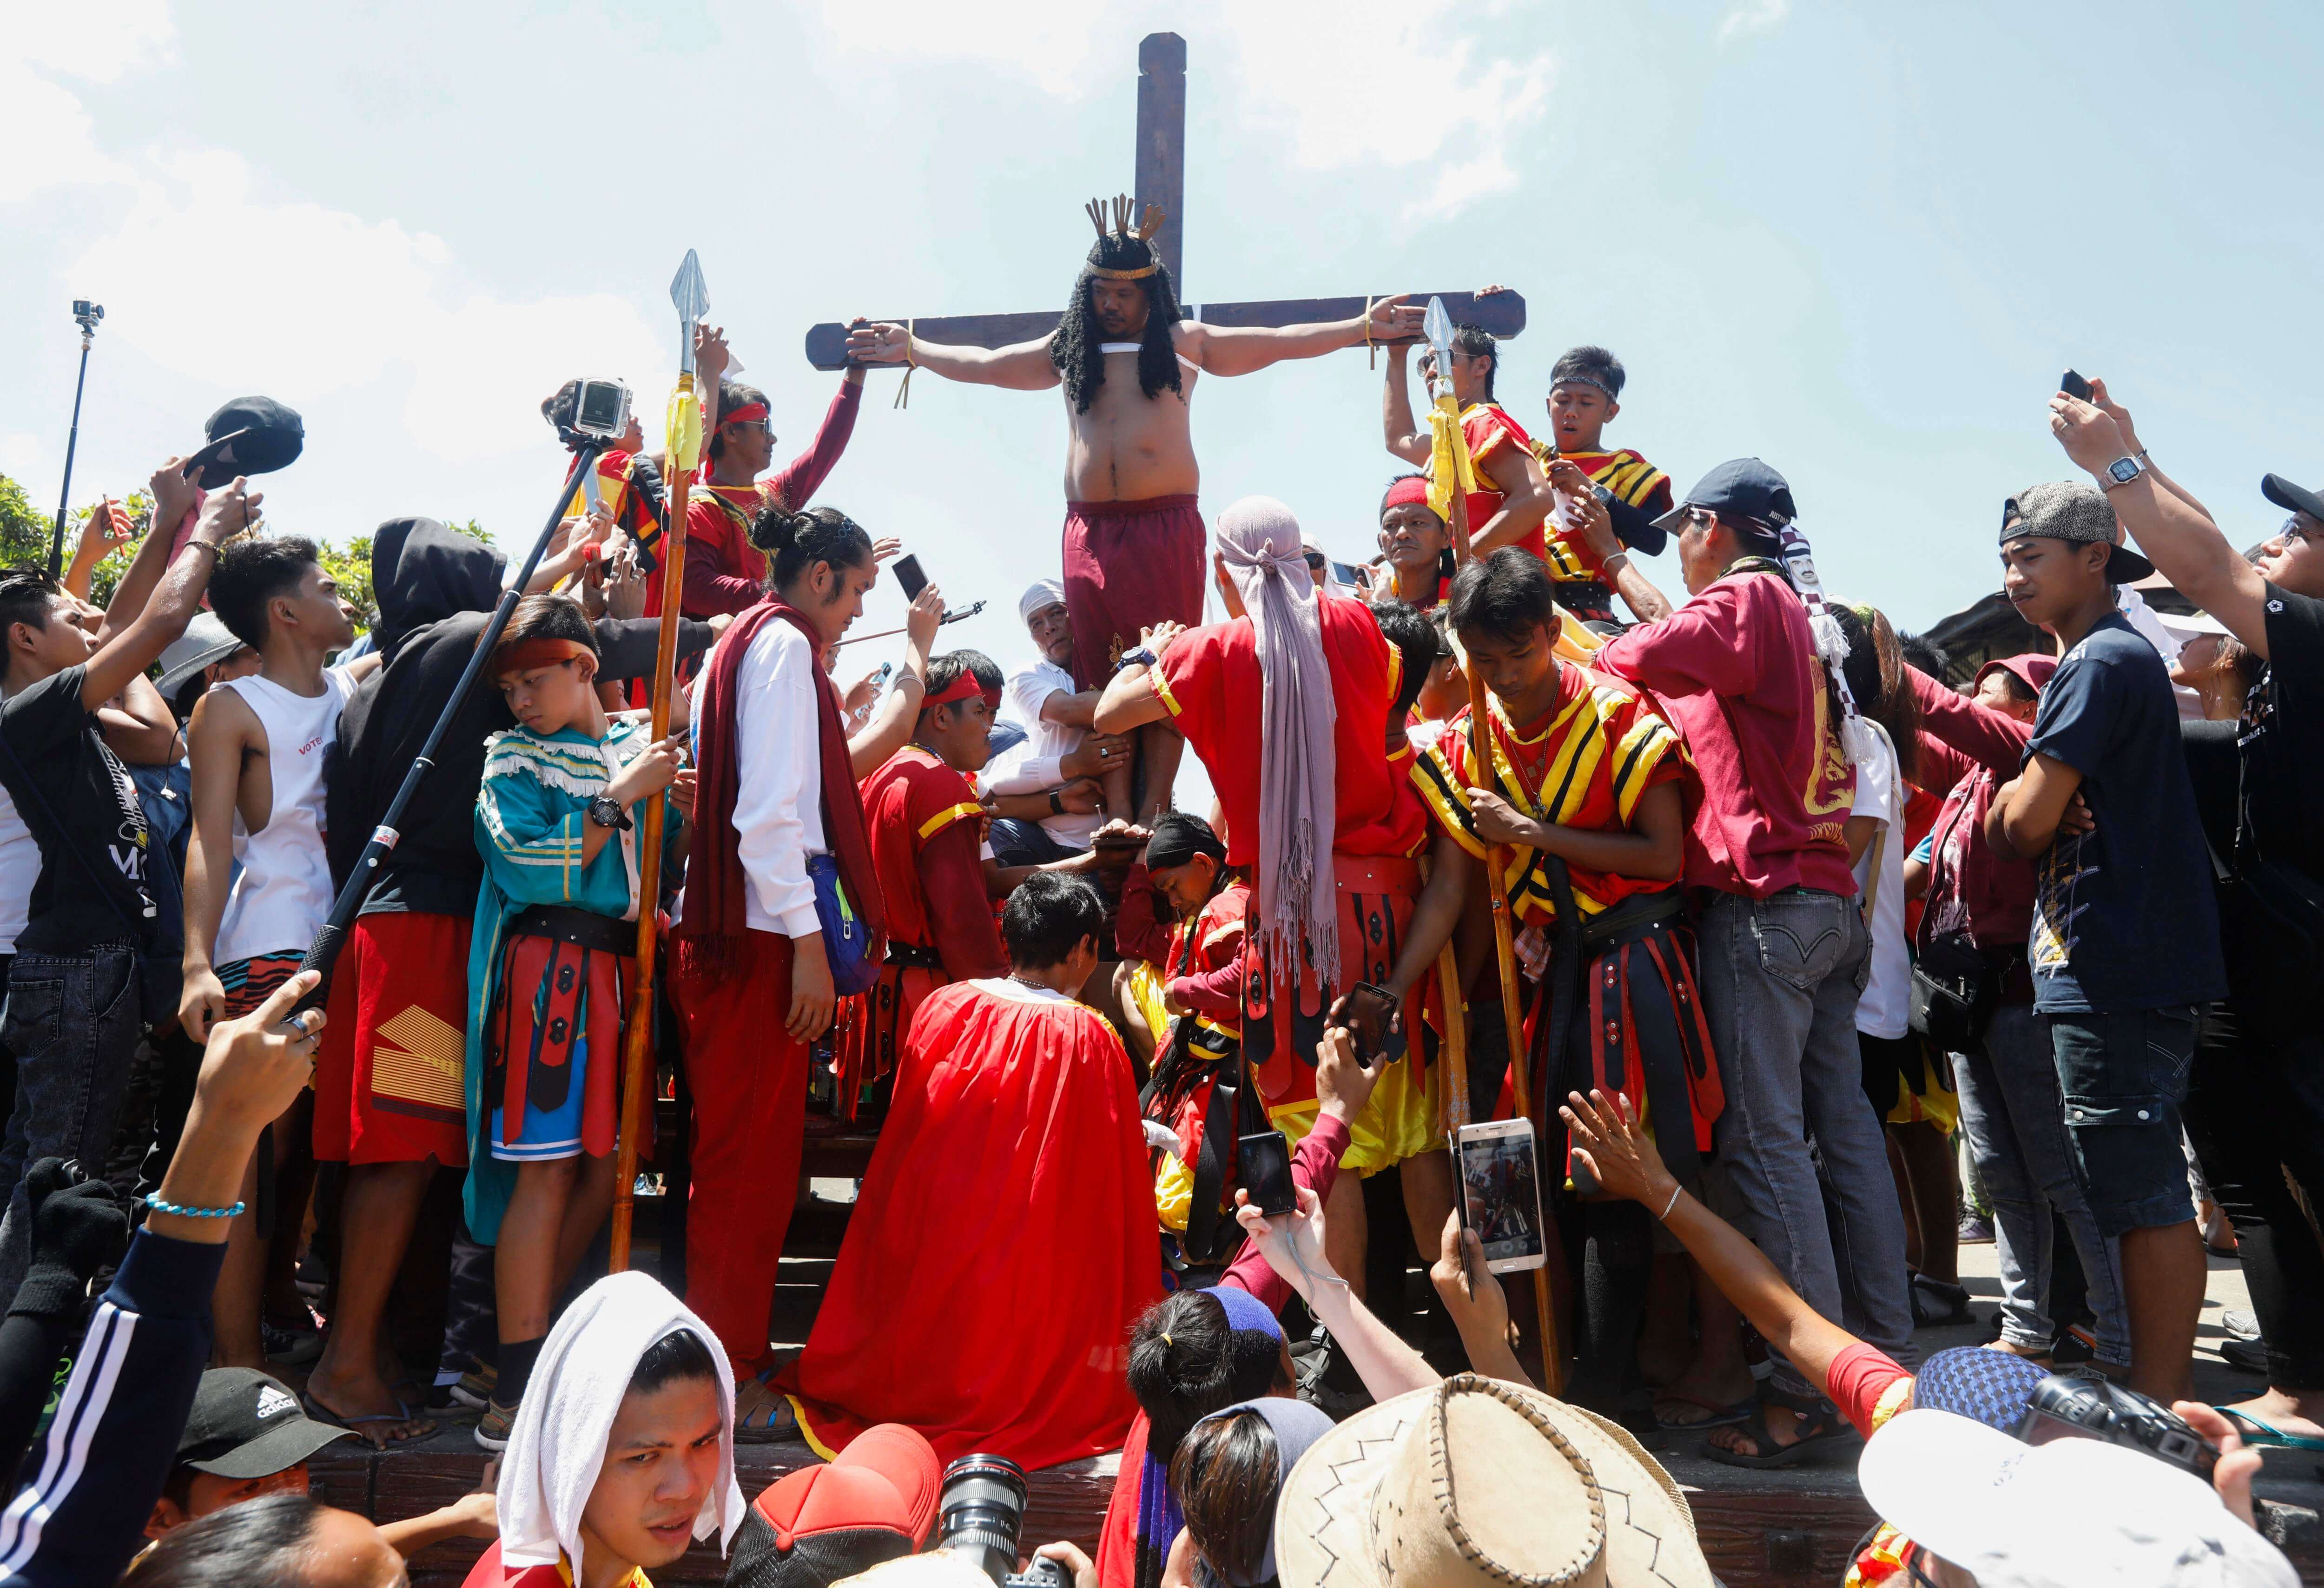 Un penitente filipino es crucificado en público para recordar el sufrimiento de Cristo durante la celebración del Viernes Santo en Filipinas; más de diez devotos son crucificados hoy frente a miles de fieles en Pampanga, entre ellos el llamado "Jesucristo de Pampanga", que se clava en la cruz por 31 año consecutivo (EFE)